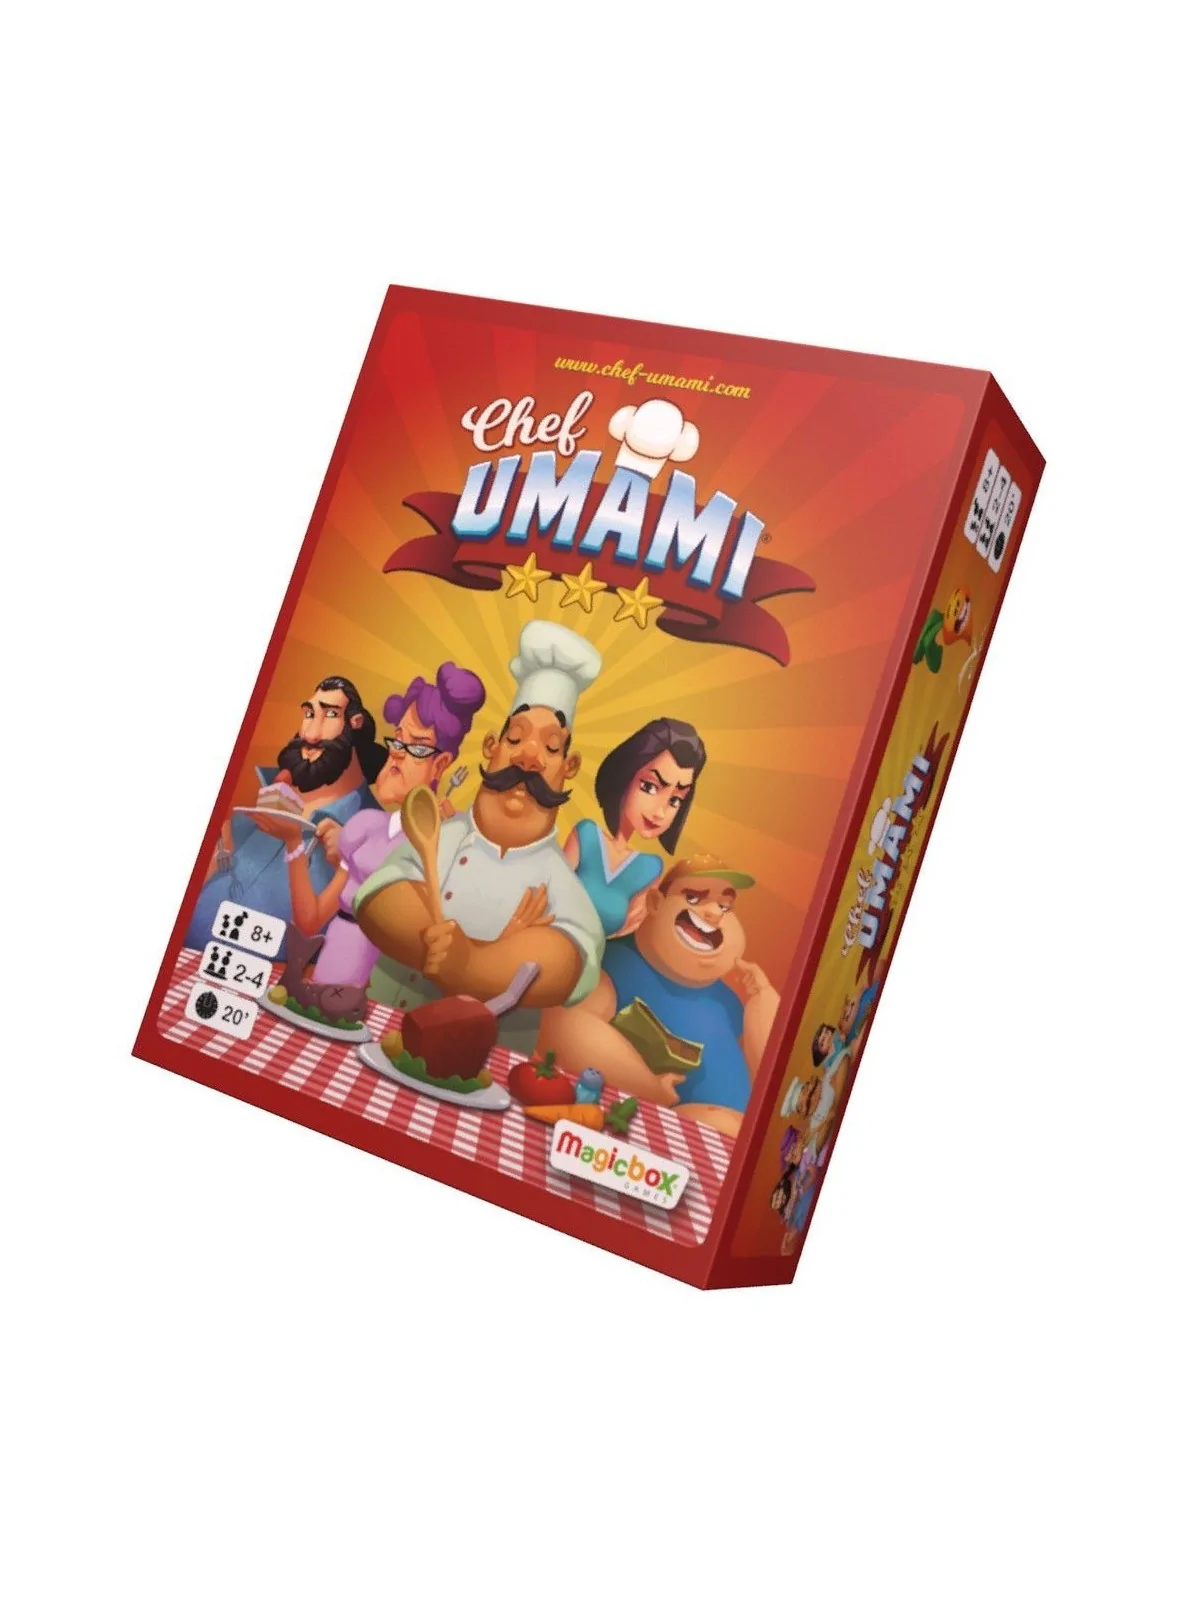 Comprar El Chef Umami barato al mejor precio 12,15 € de Magic Box